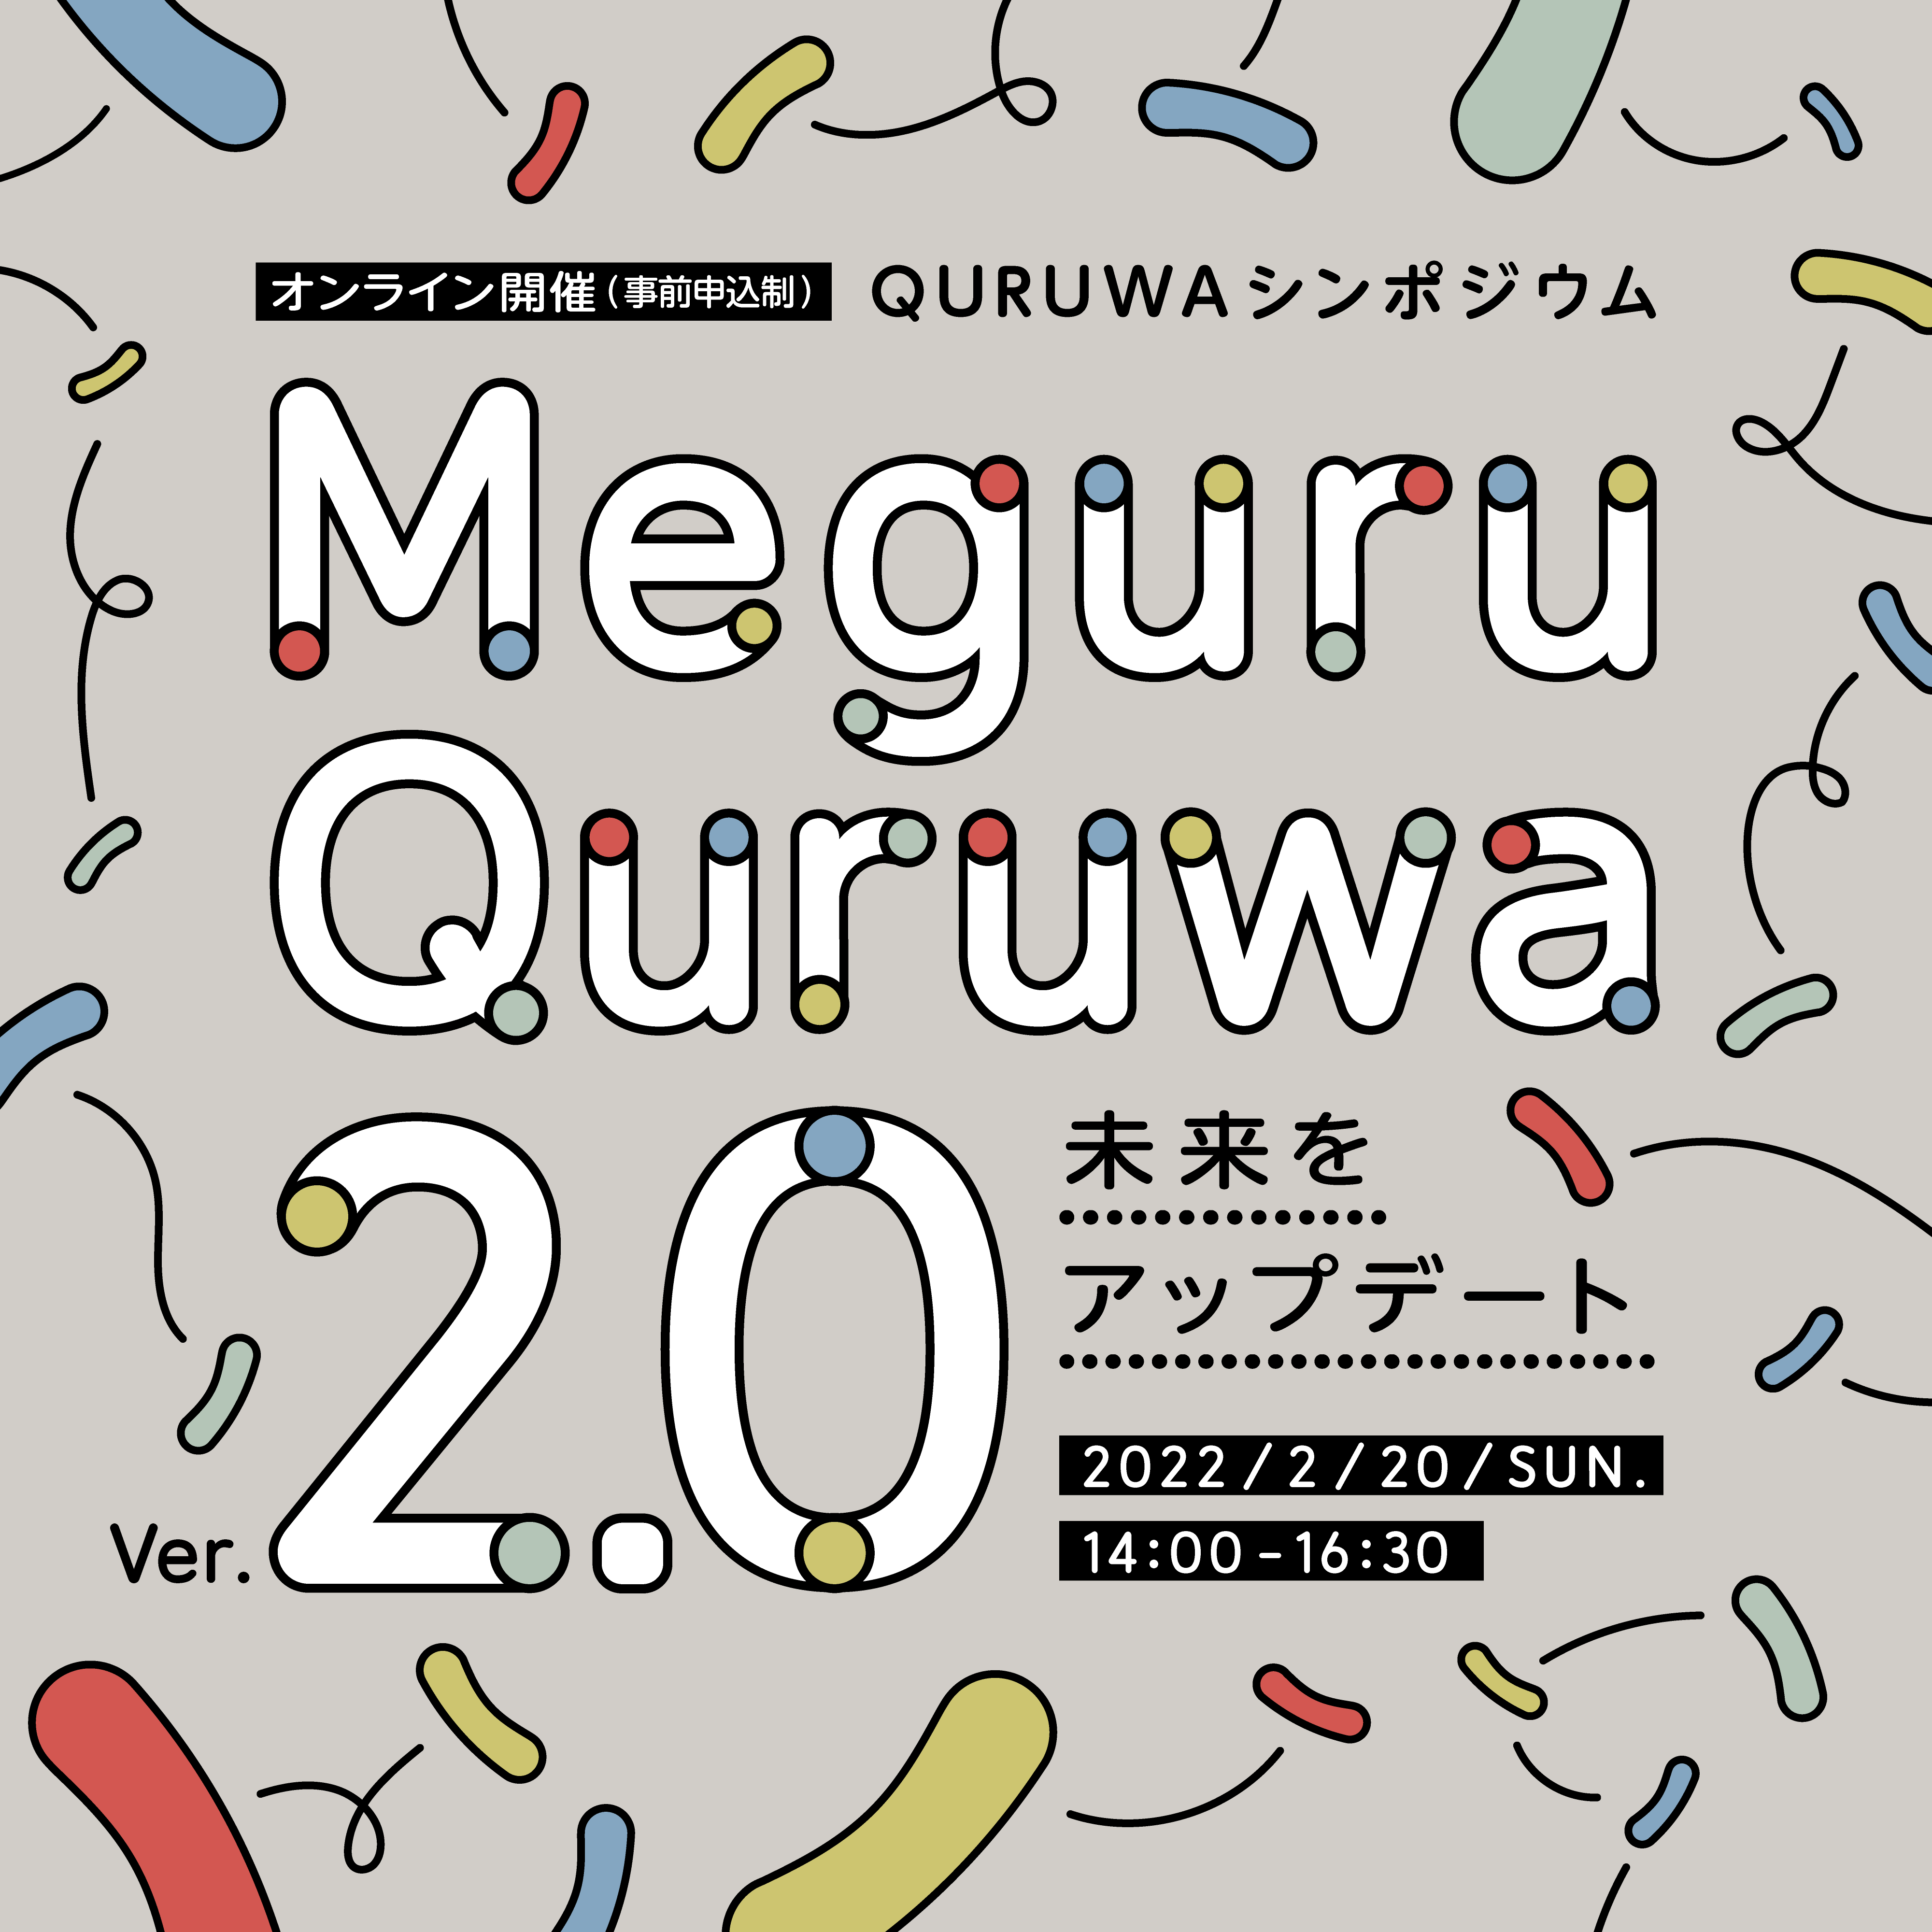 2022年2月20日（日）QURUWAシンポジウム「MeguruQuruwa 2.0 − 未来をアップデート − 」